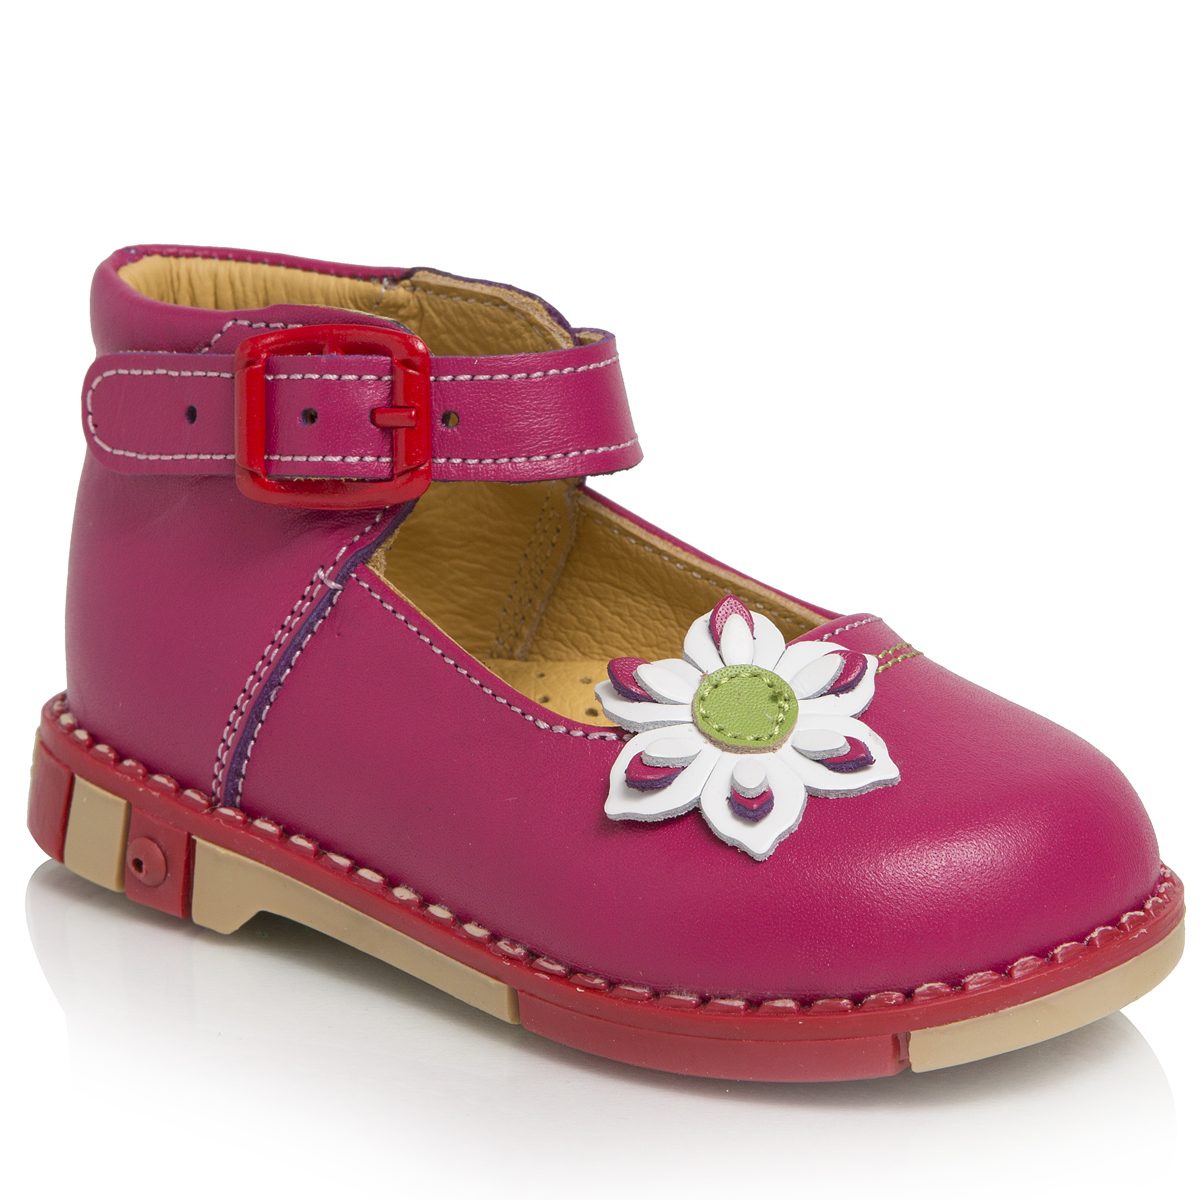 Туфли для девочки Таши Орто, цвет: малиновый. 211-20. Размер 22